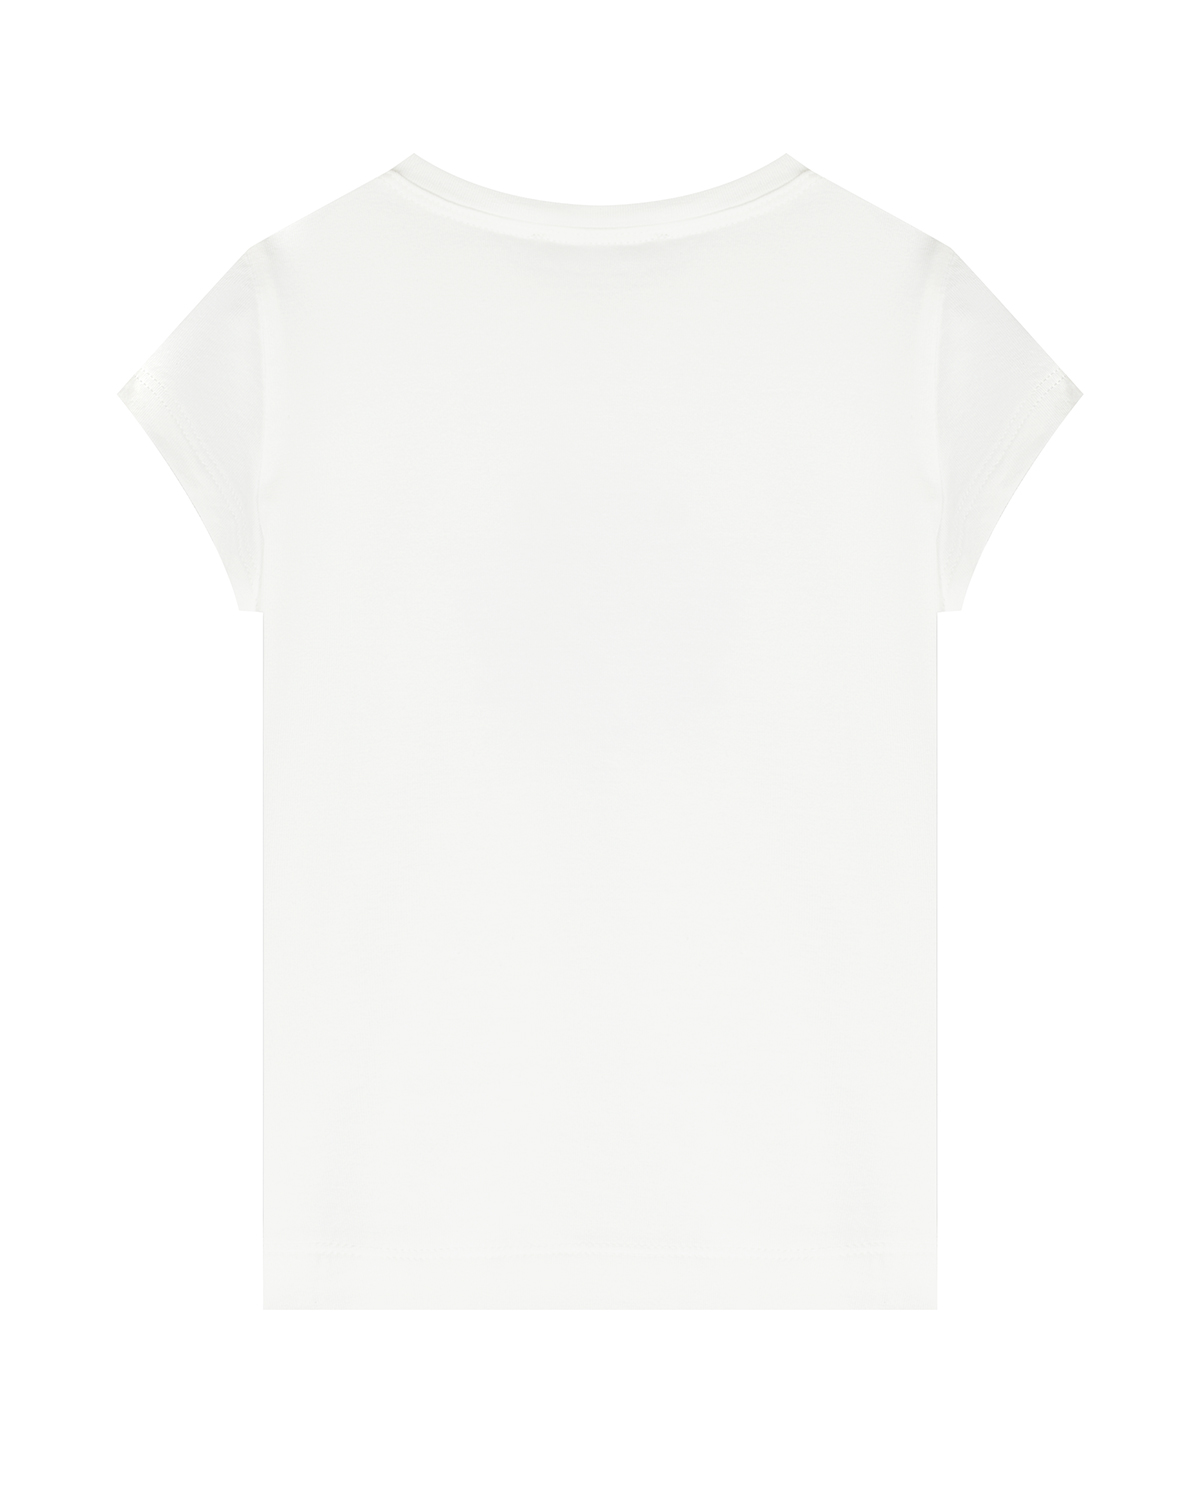 Белая футболка с принтом "букет" Monnalisa детская, размер 104, цвет белый - фото 2